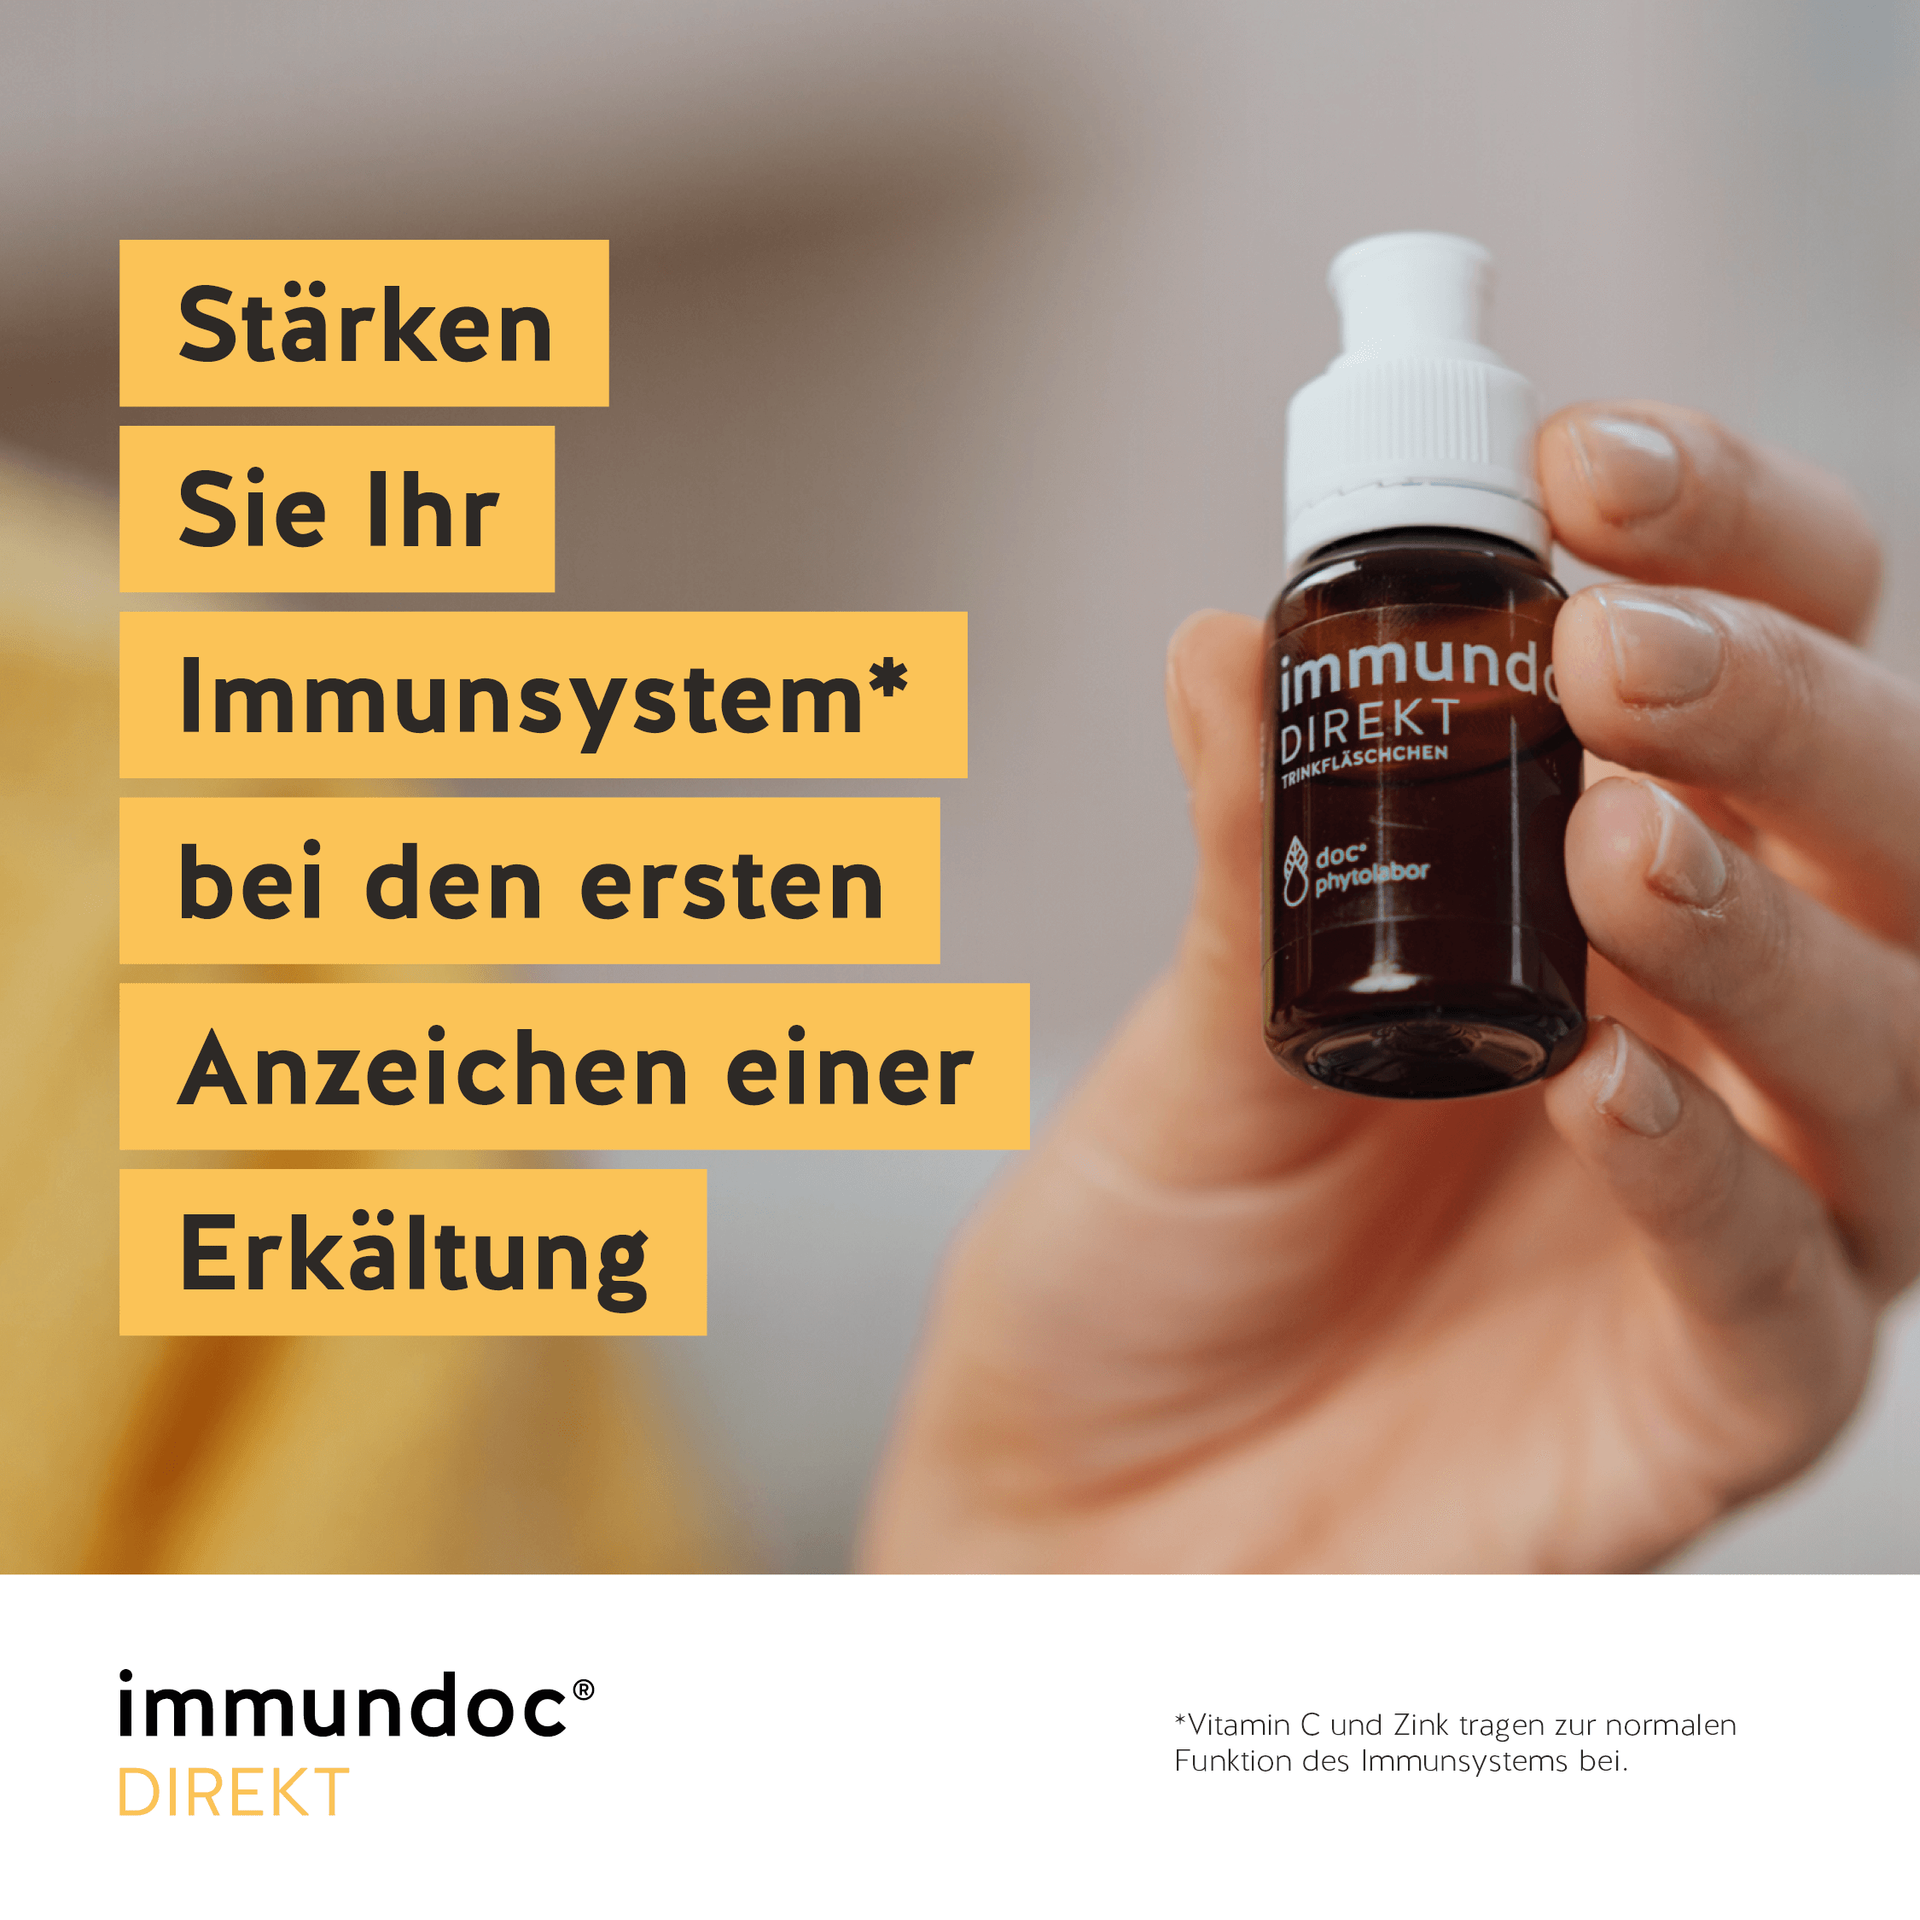 Stärken Sie Ihr Immunsystem mit immundoc® DIREKT